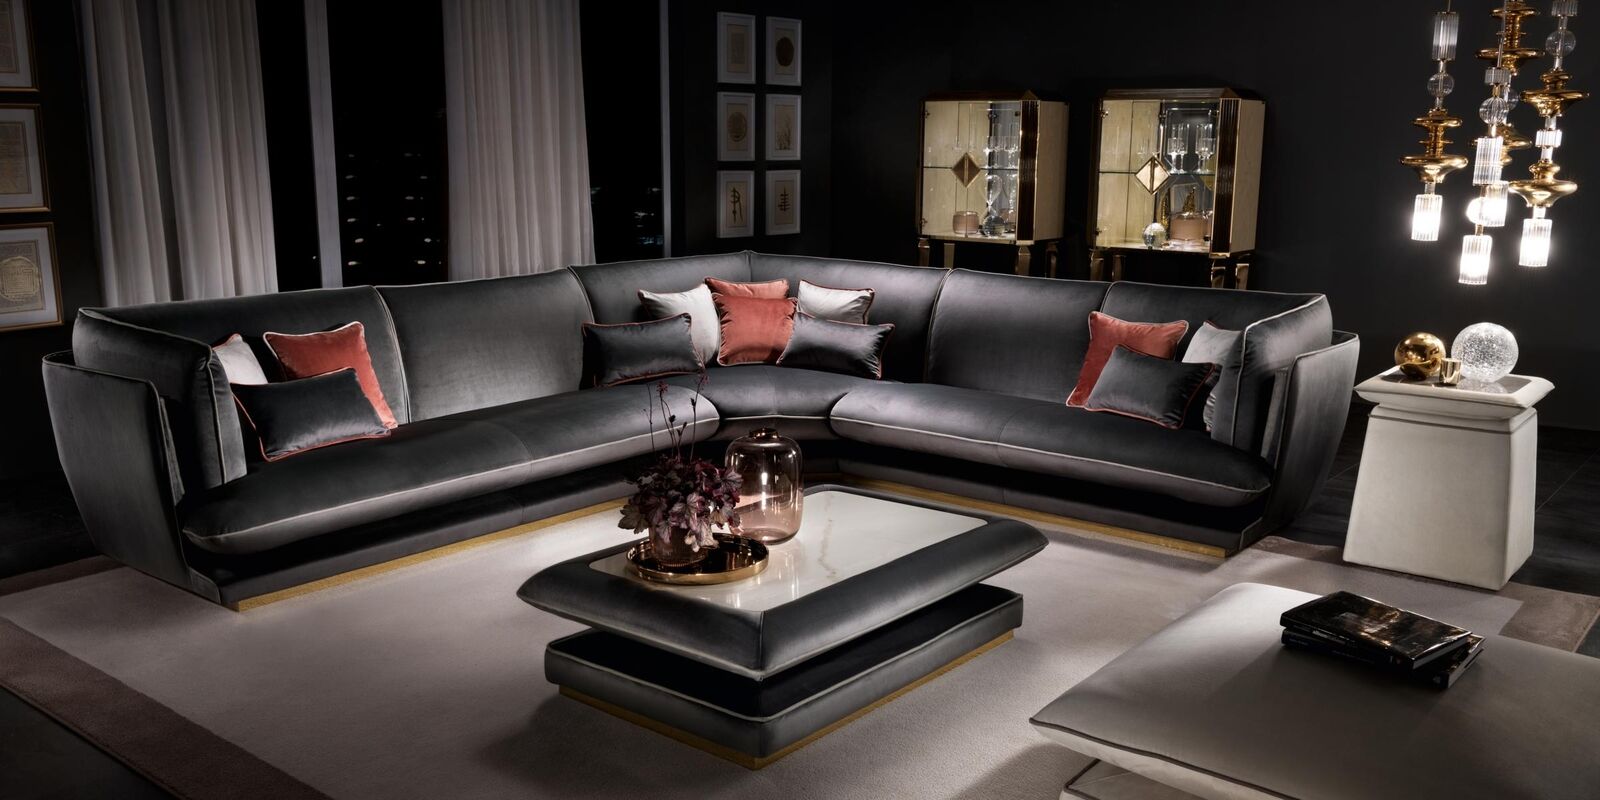 Sofa Couch Luxus Ecksofa Möbel Wohnzimmer Polster Design Textil arredoclassic